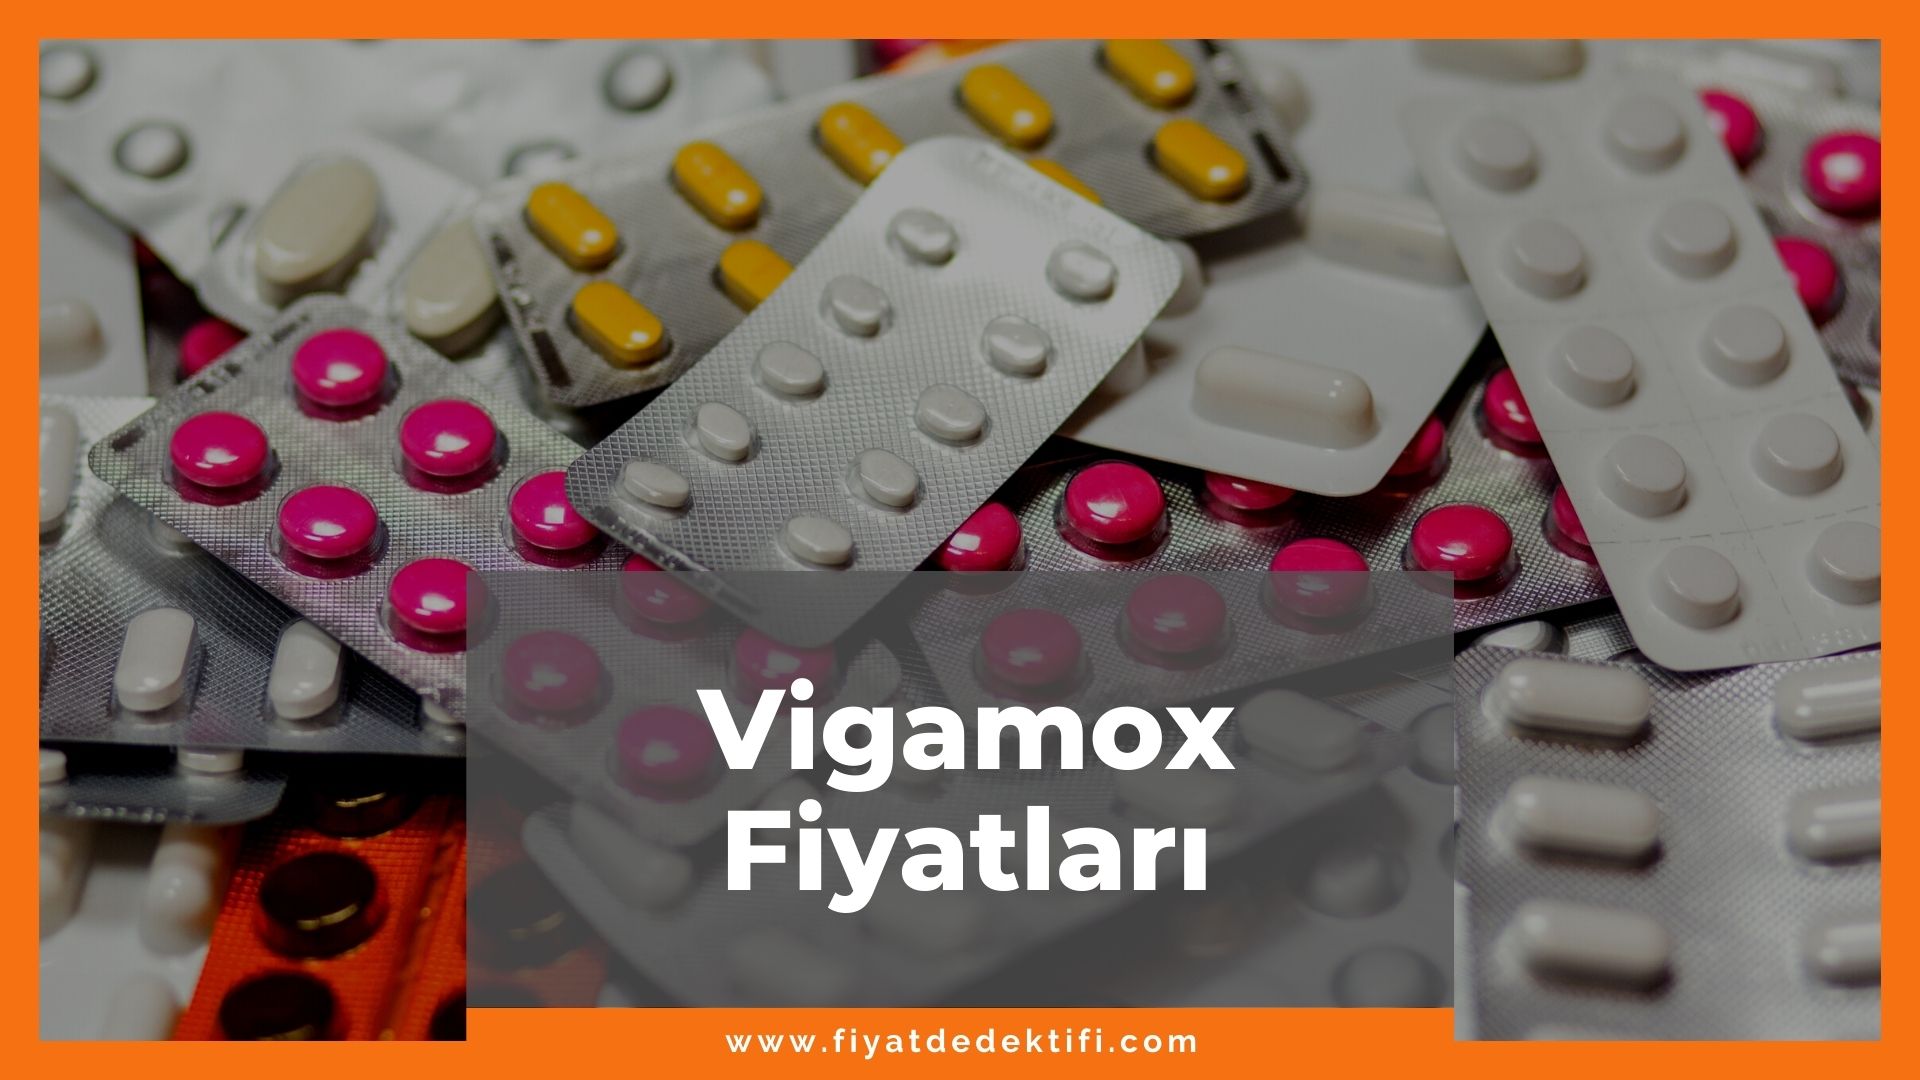 Vigamox Fiyat 2021, Vigamox Fiyatı, Vigamox Damla Fiyatı, vigamox zamlandı mı, vigamox zamlı fiyatı ne kadar kaç tl